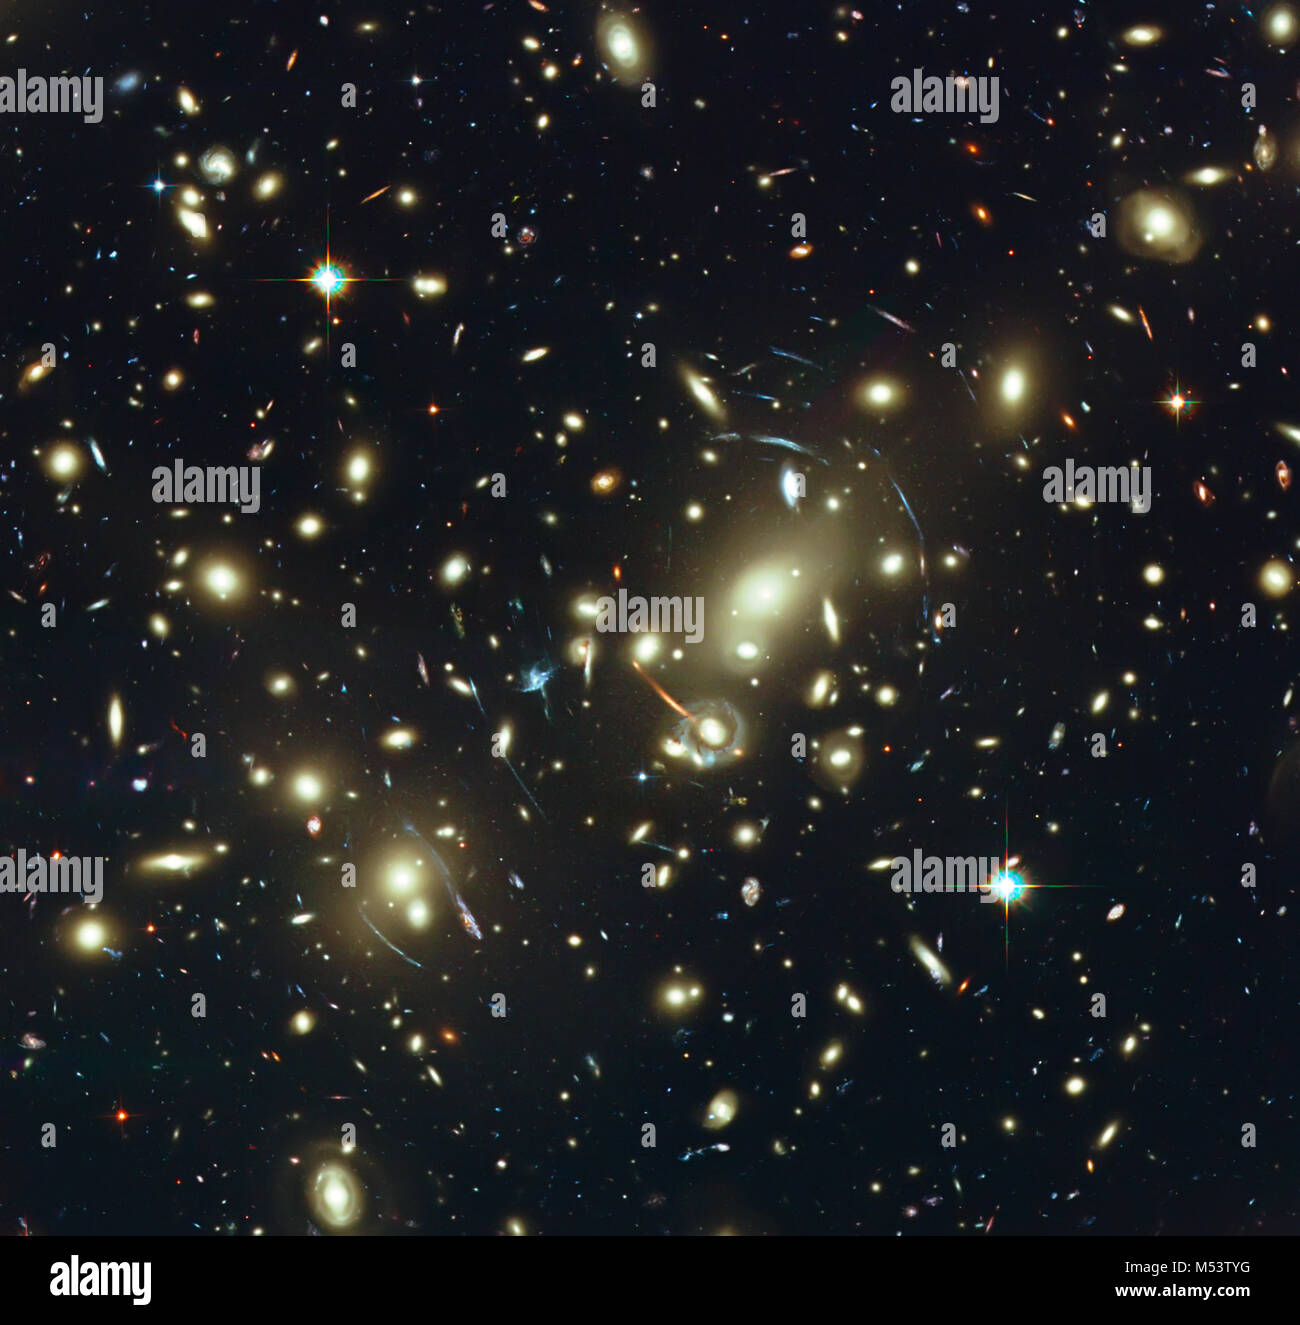 Ferne Galaxien, Abell 2218. Elemente dieses Bild von der NASA eingerichtet. Retuschierte Bild. Stockfoto